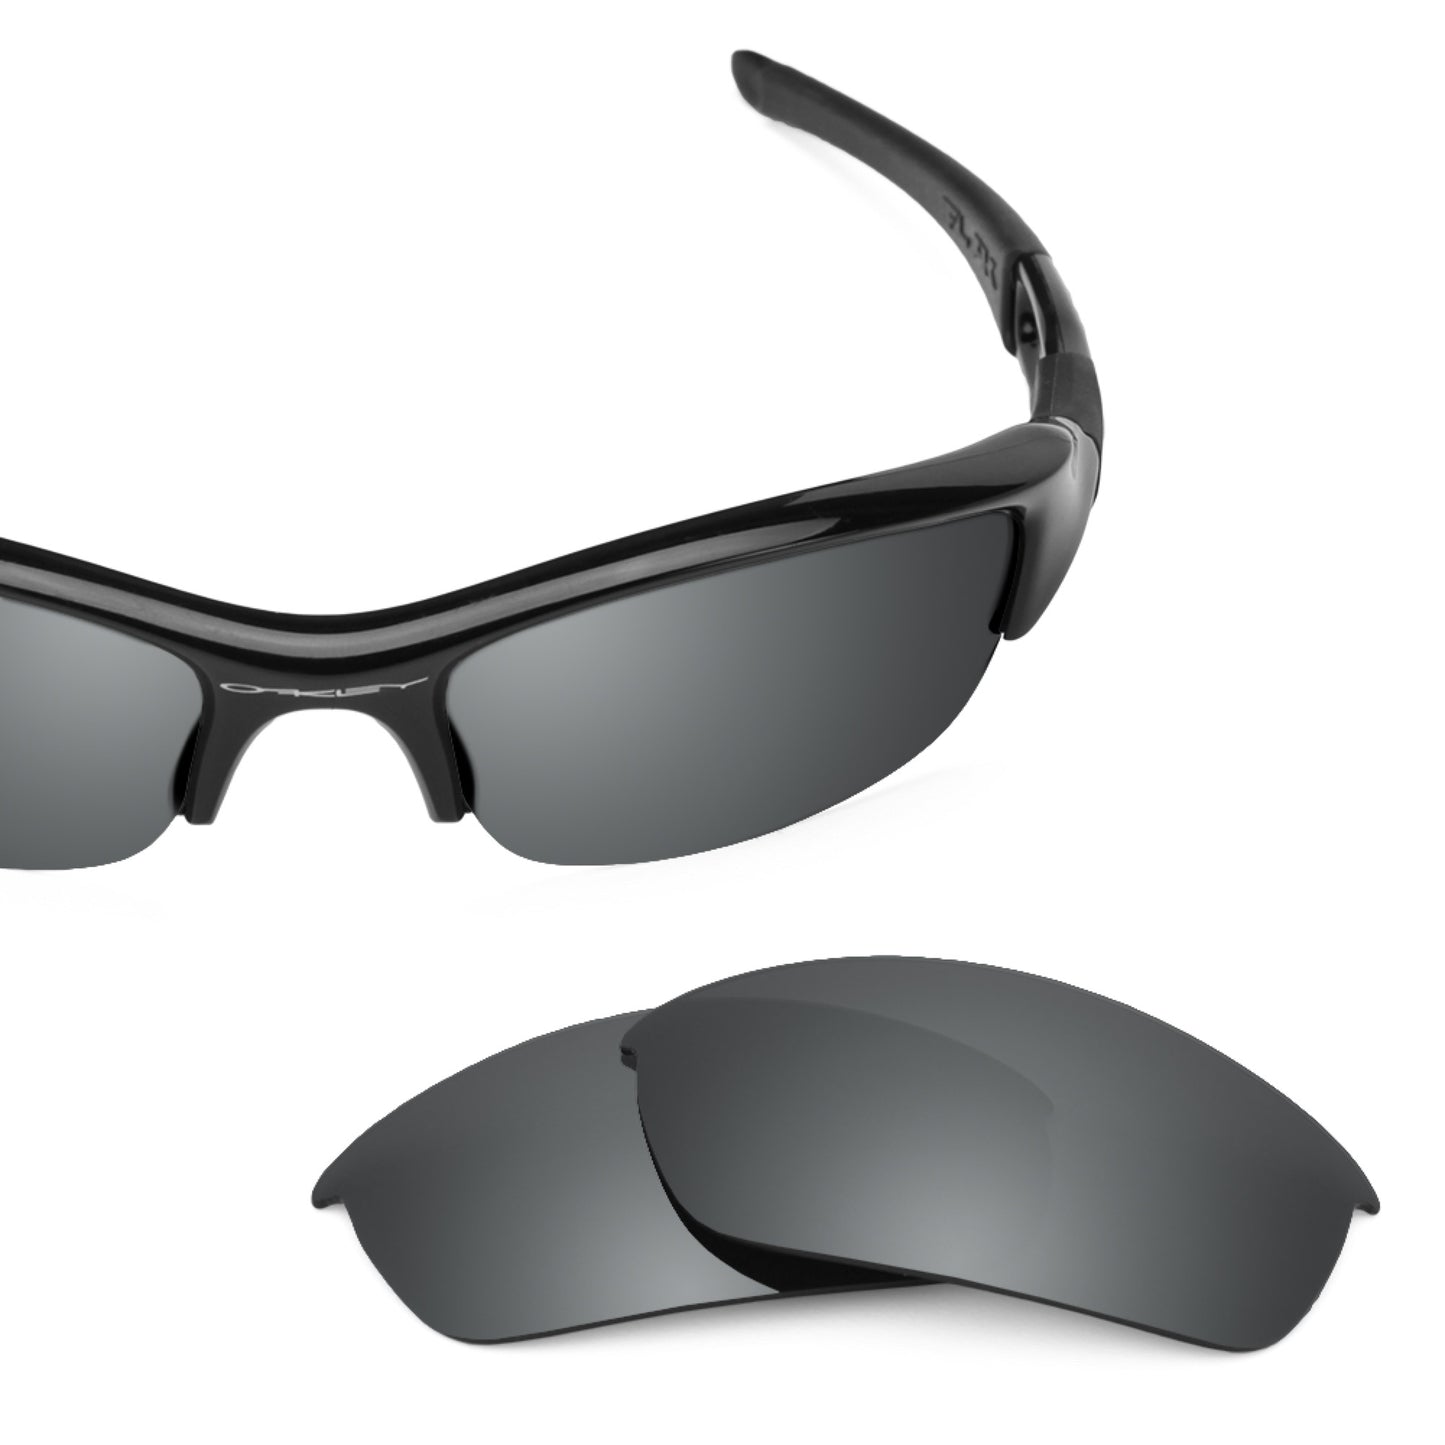 Revant replacement lenses for Oakley Flak Jacket (Low Bridge Fit) Non-Polarized Black Chrome